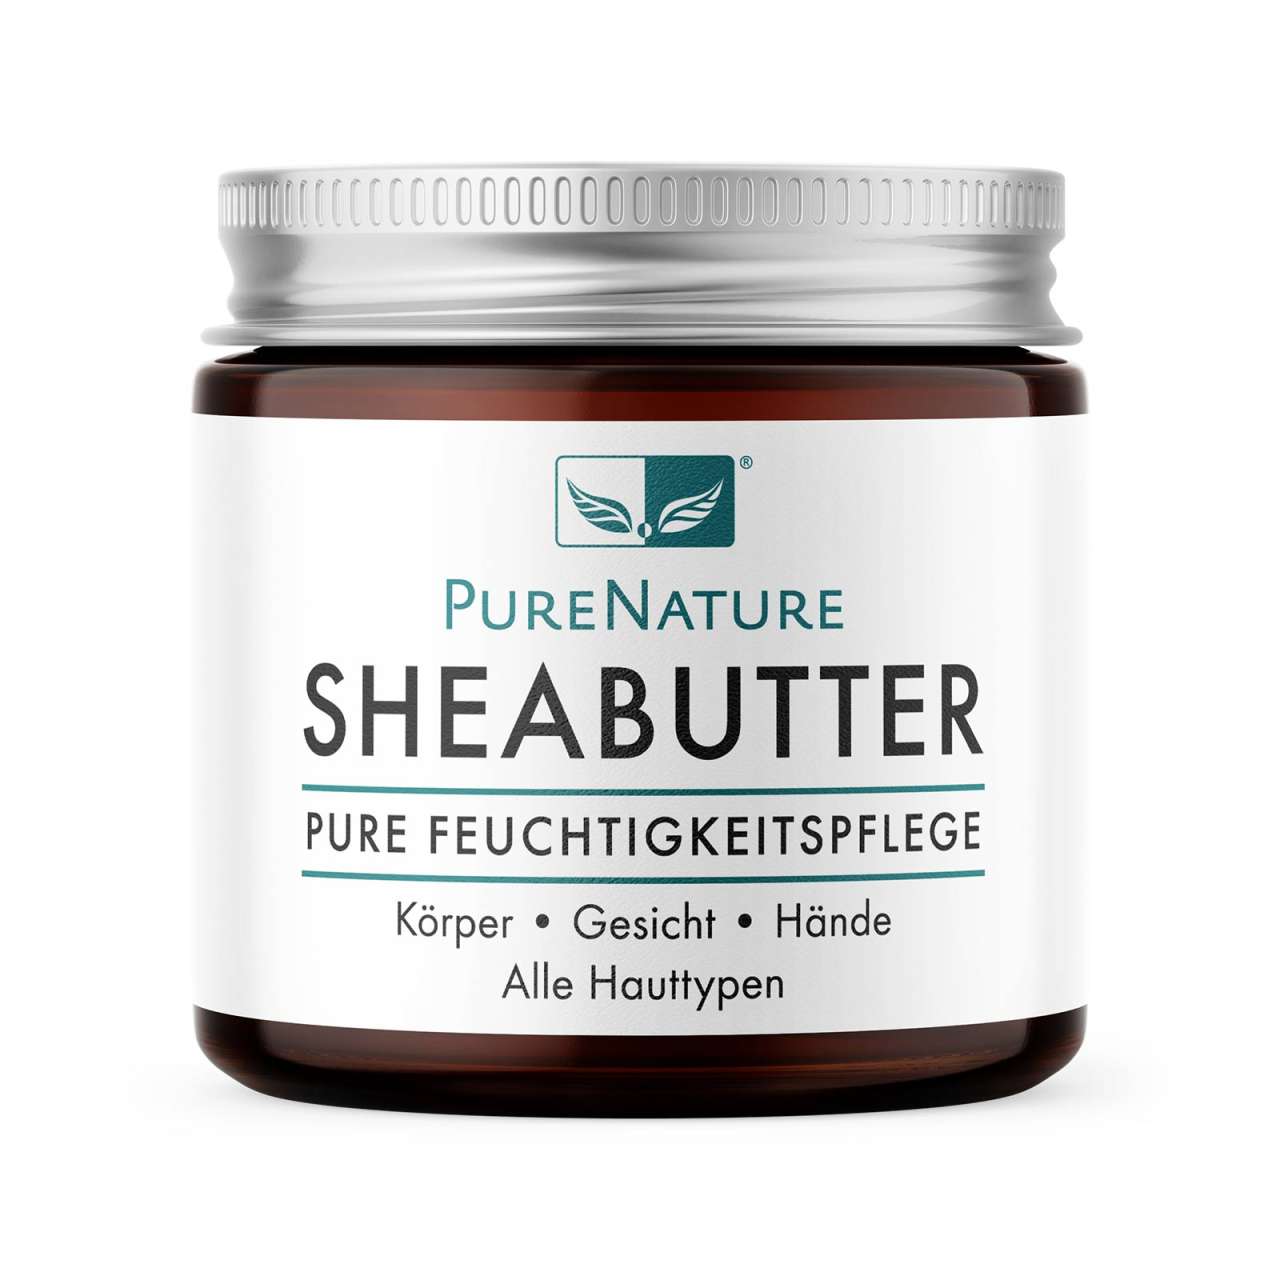 PureNature Sheabutter - 100% Naturprodukt ohne Zusätze